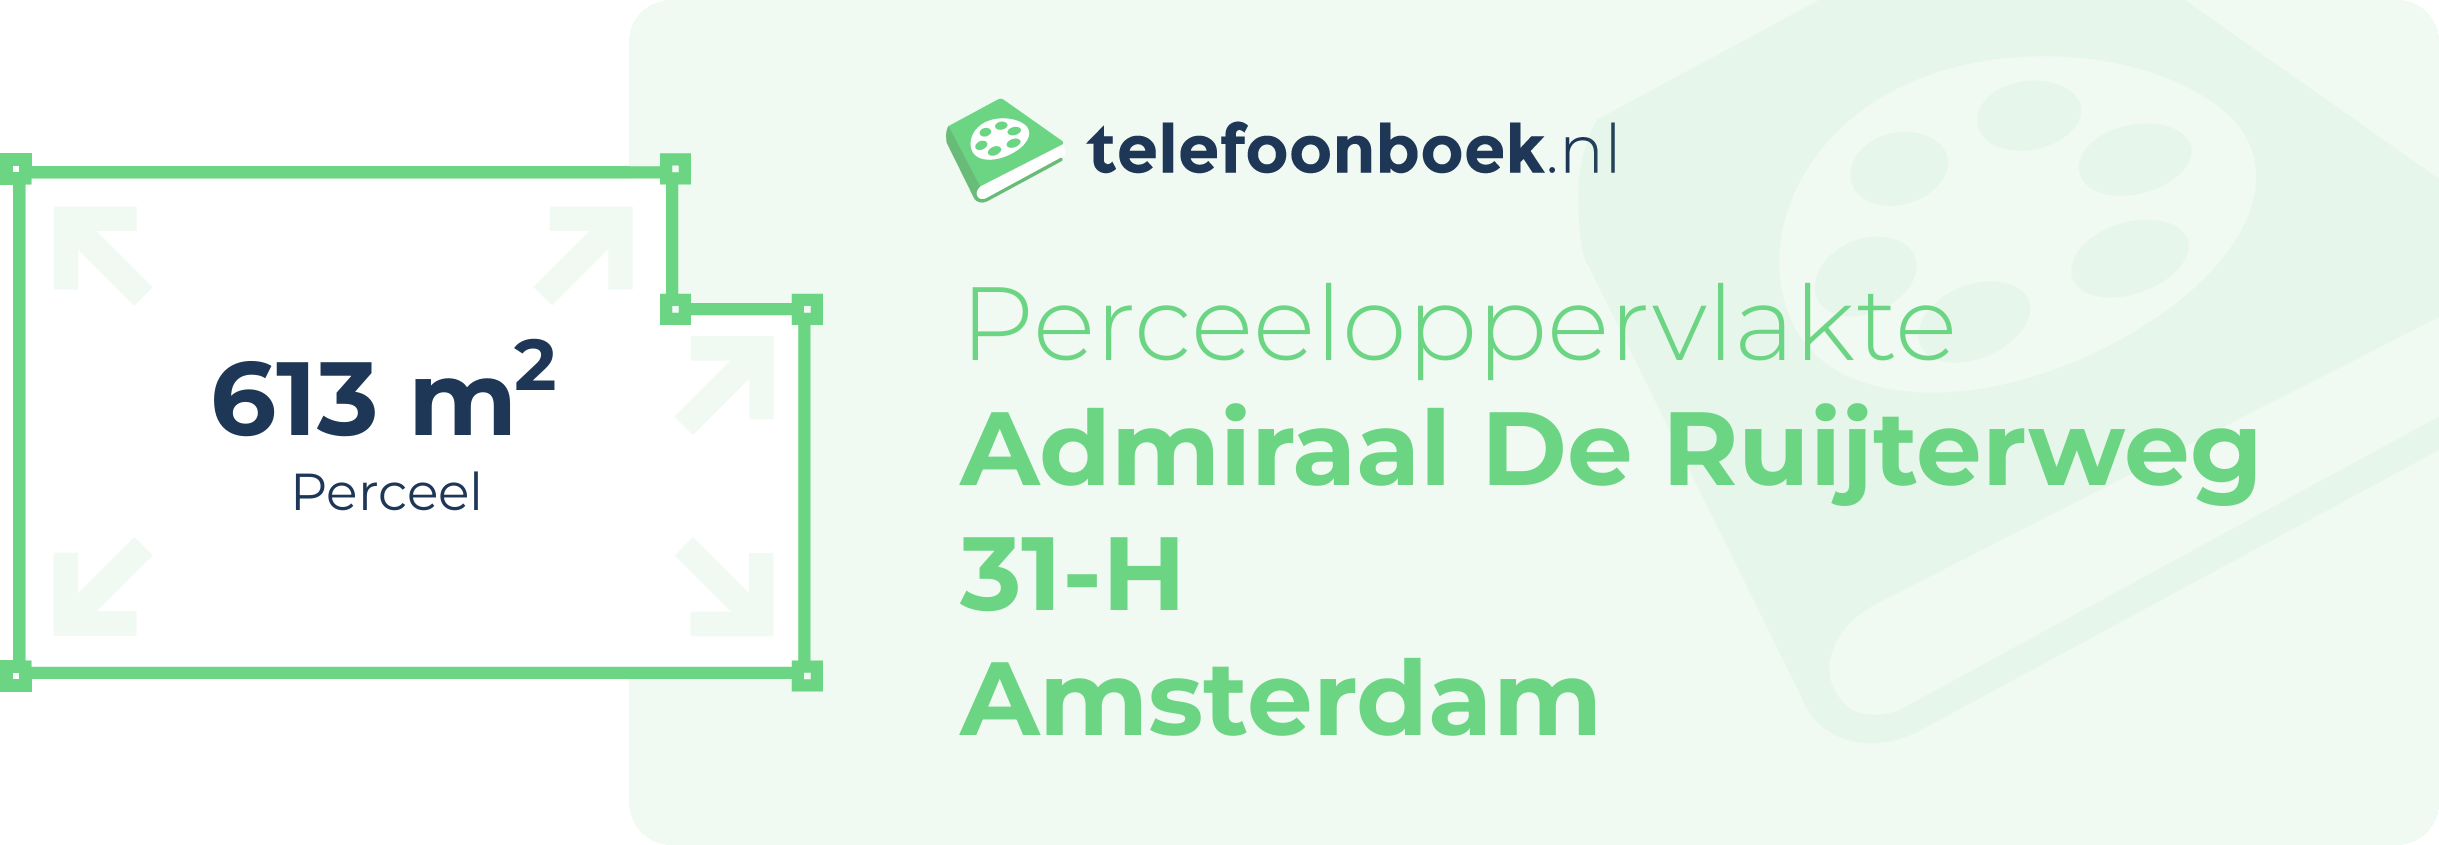 Perceeloppervlakte Admiraal De Ruijterweg 31-H Amsterdam